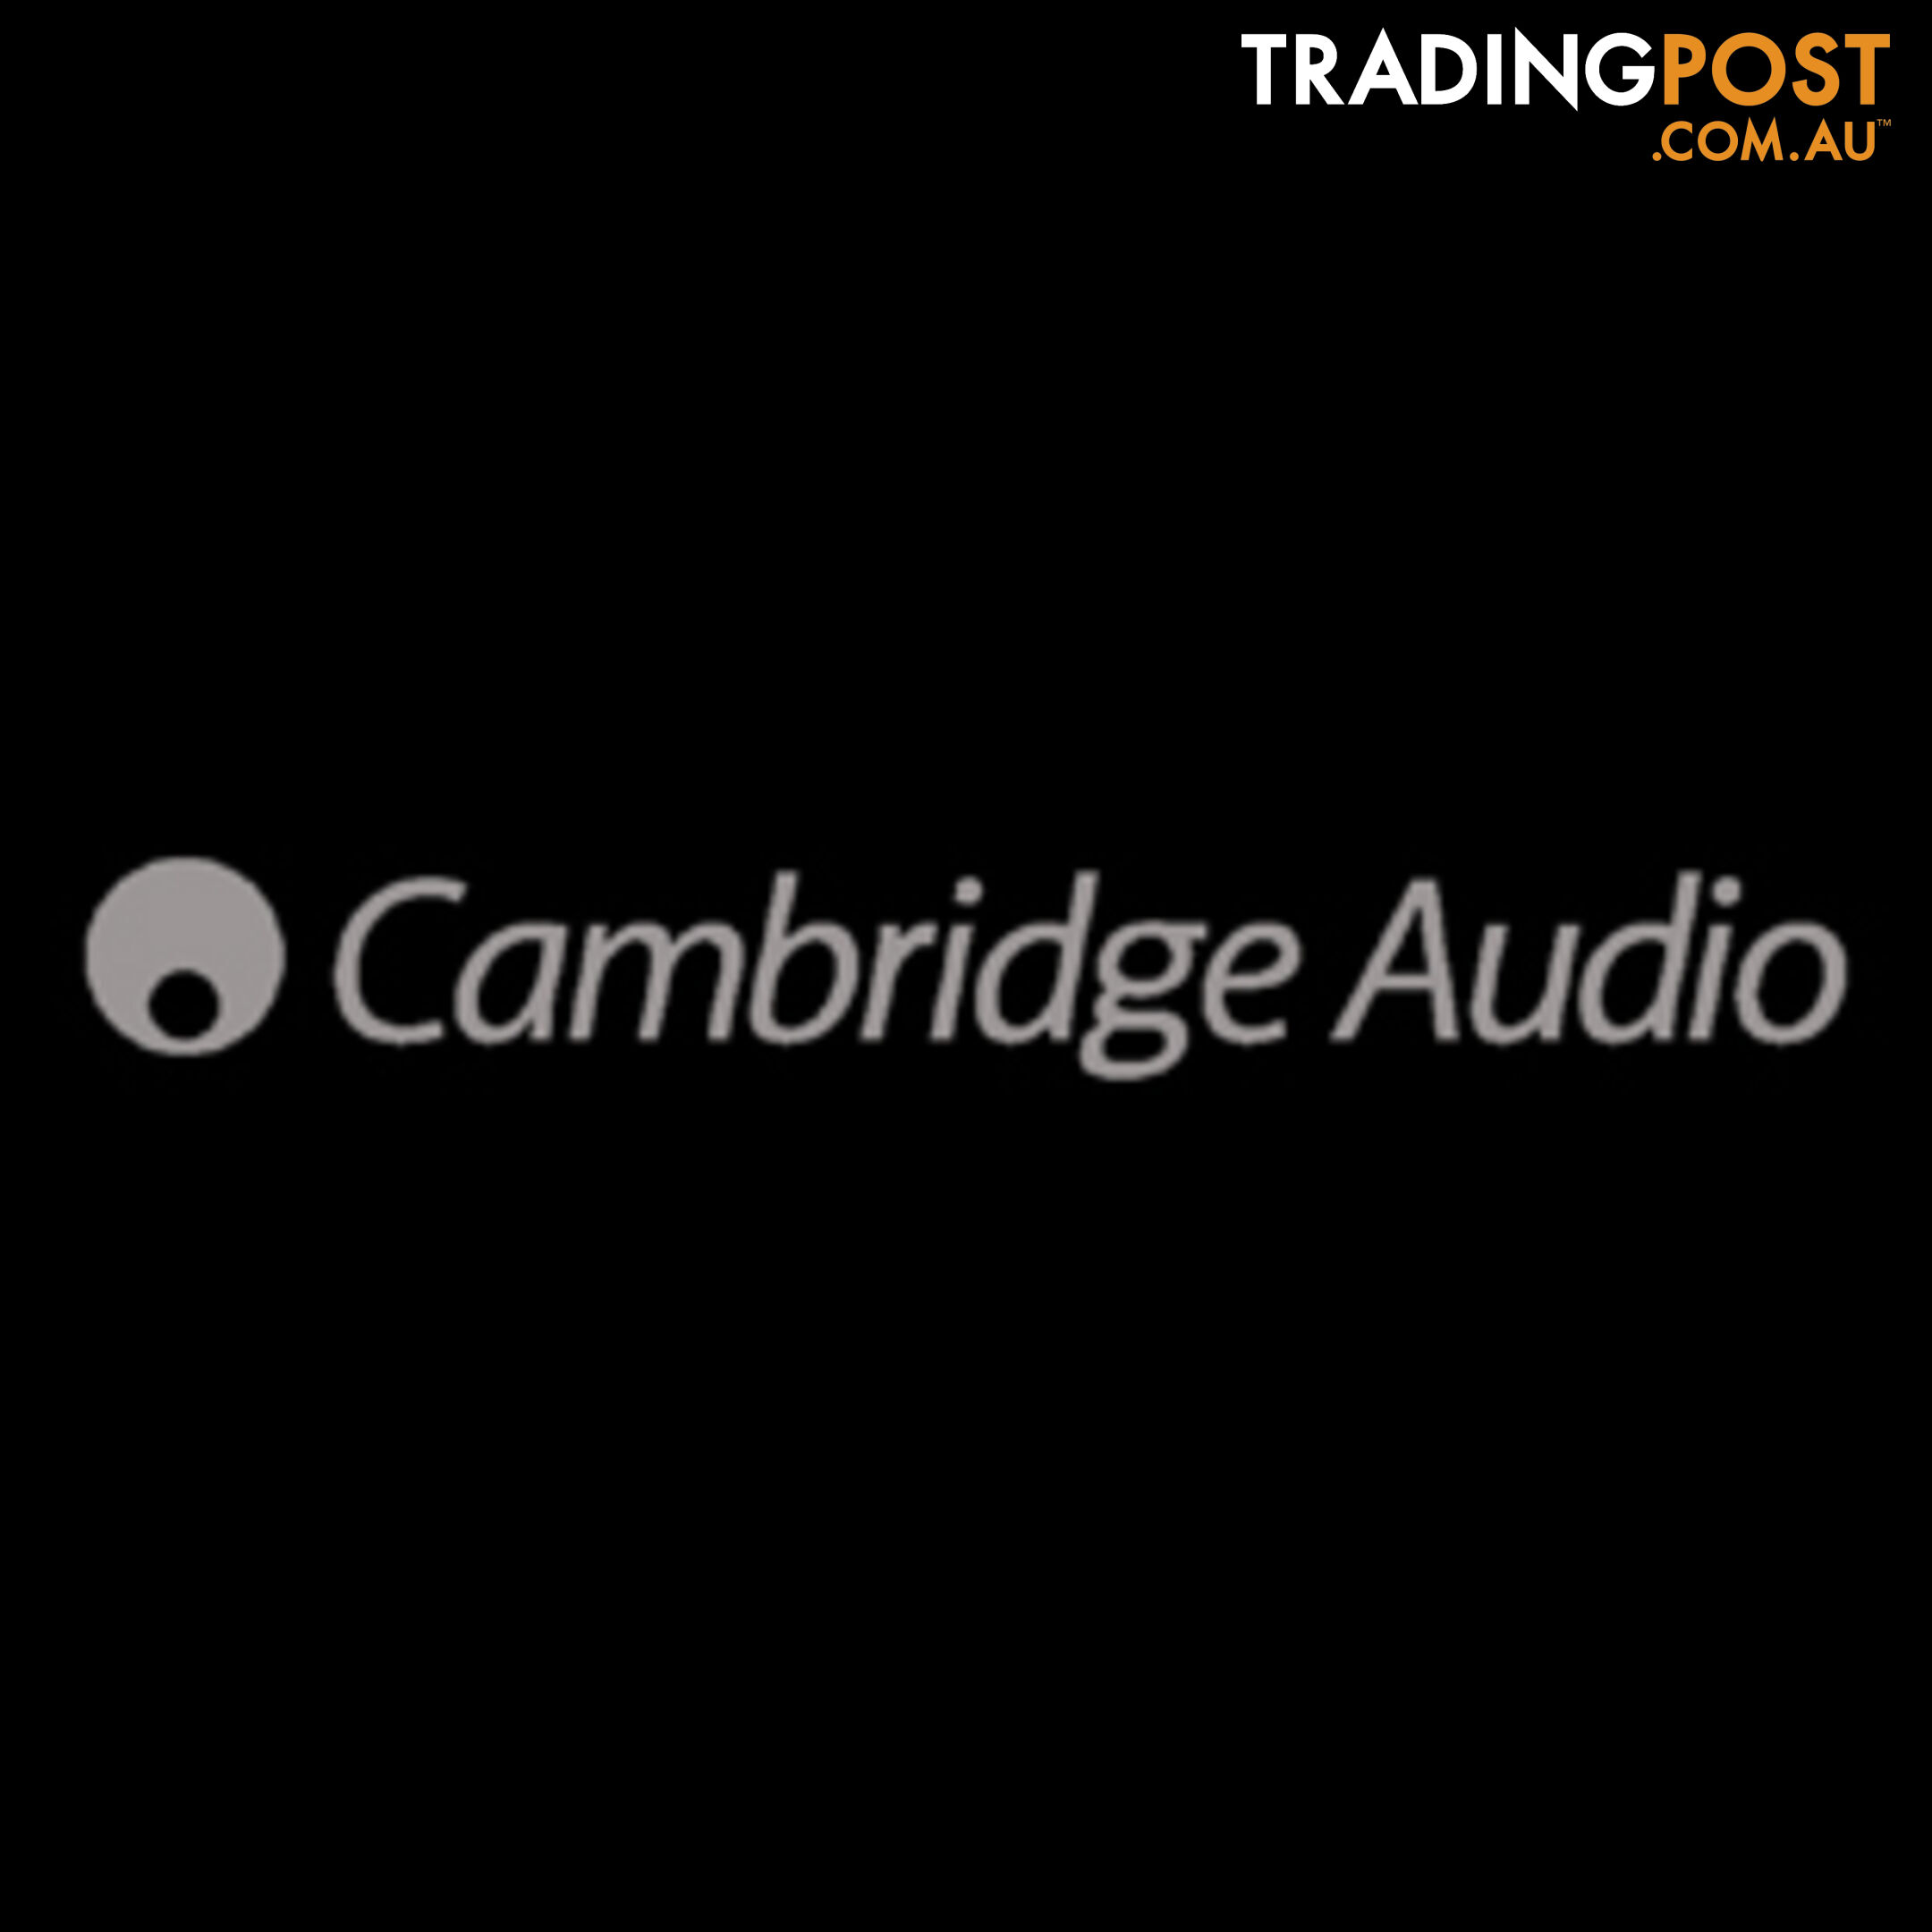 Cambridge Audio SLA25 active speakers down from $599 to $359 pair